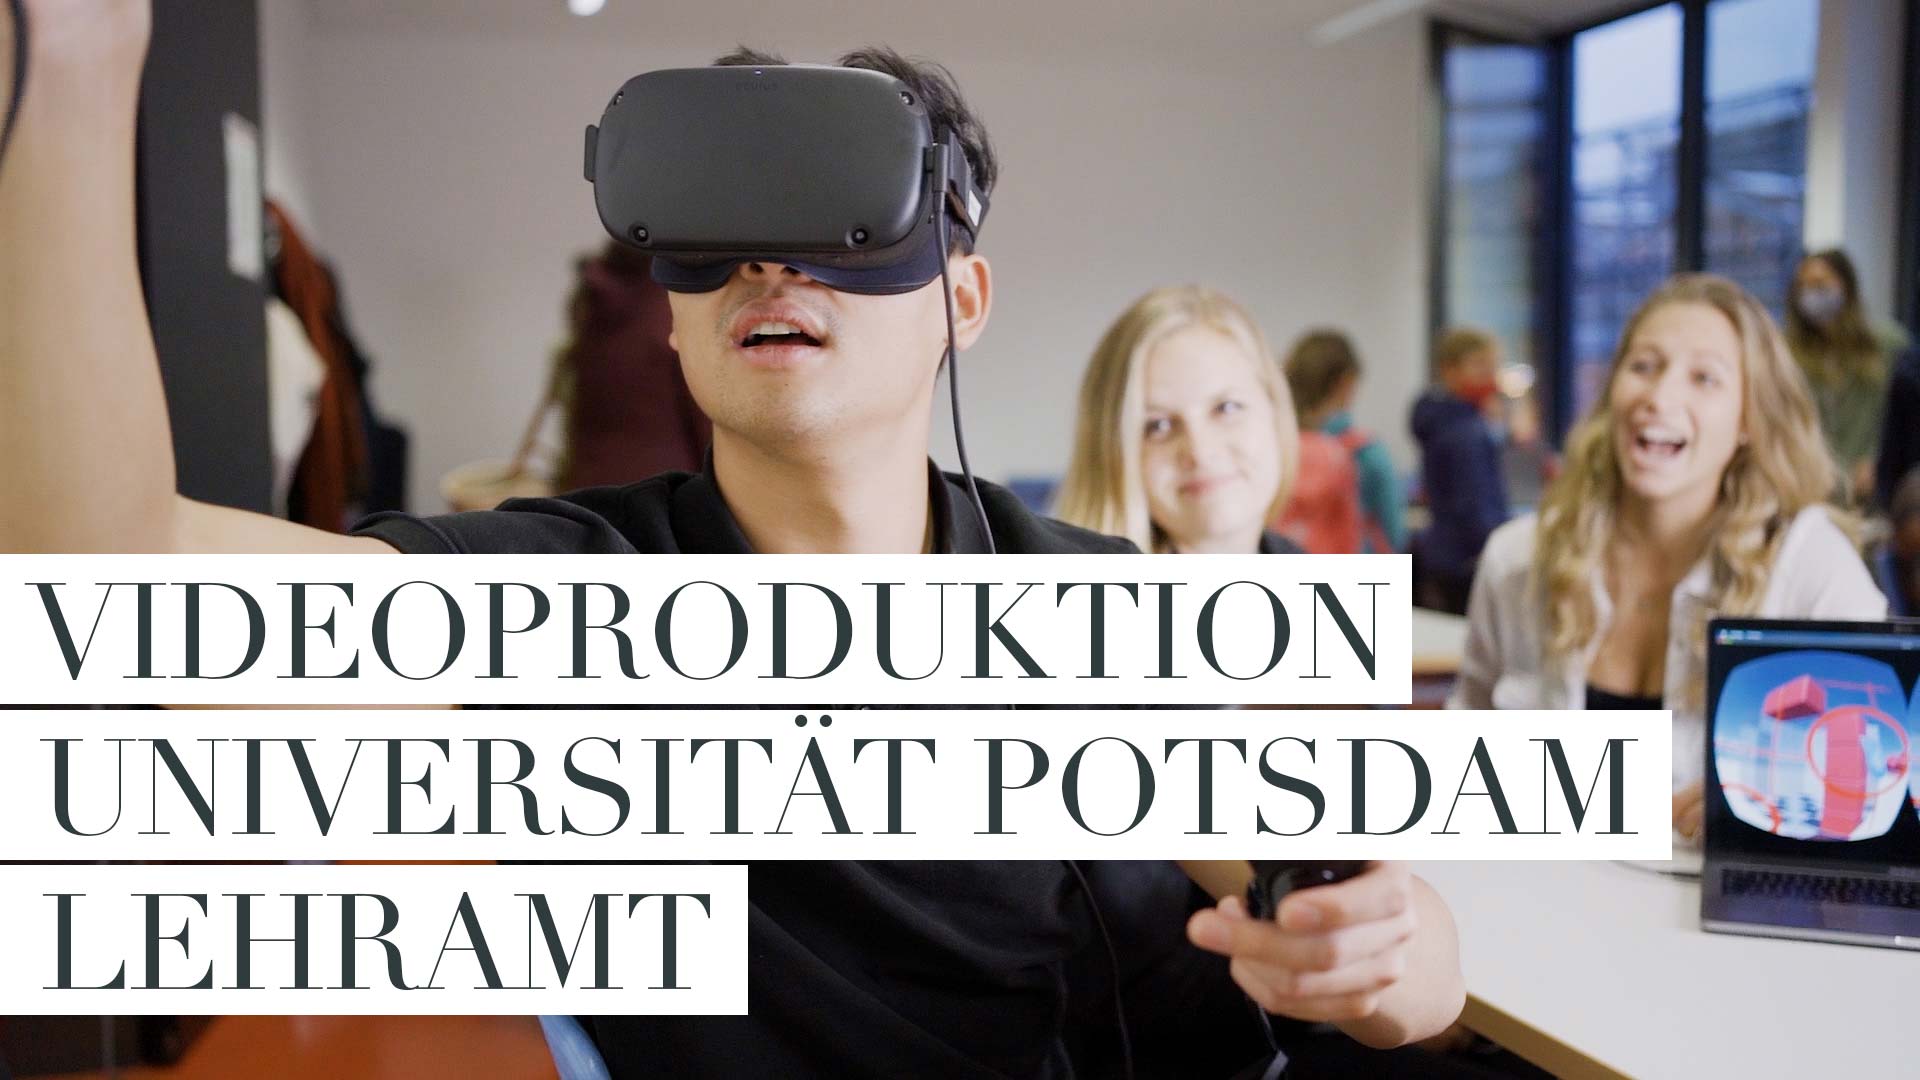 Videoproduktion für die Universität Potsdam | Studierendenmarketing Lehramt, 2020 Produktion: Matthias Friel